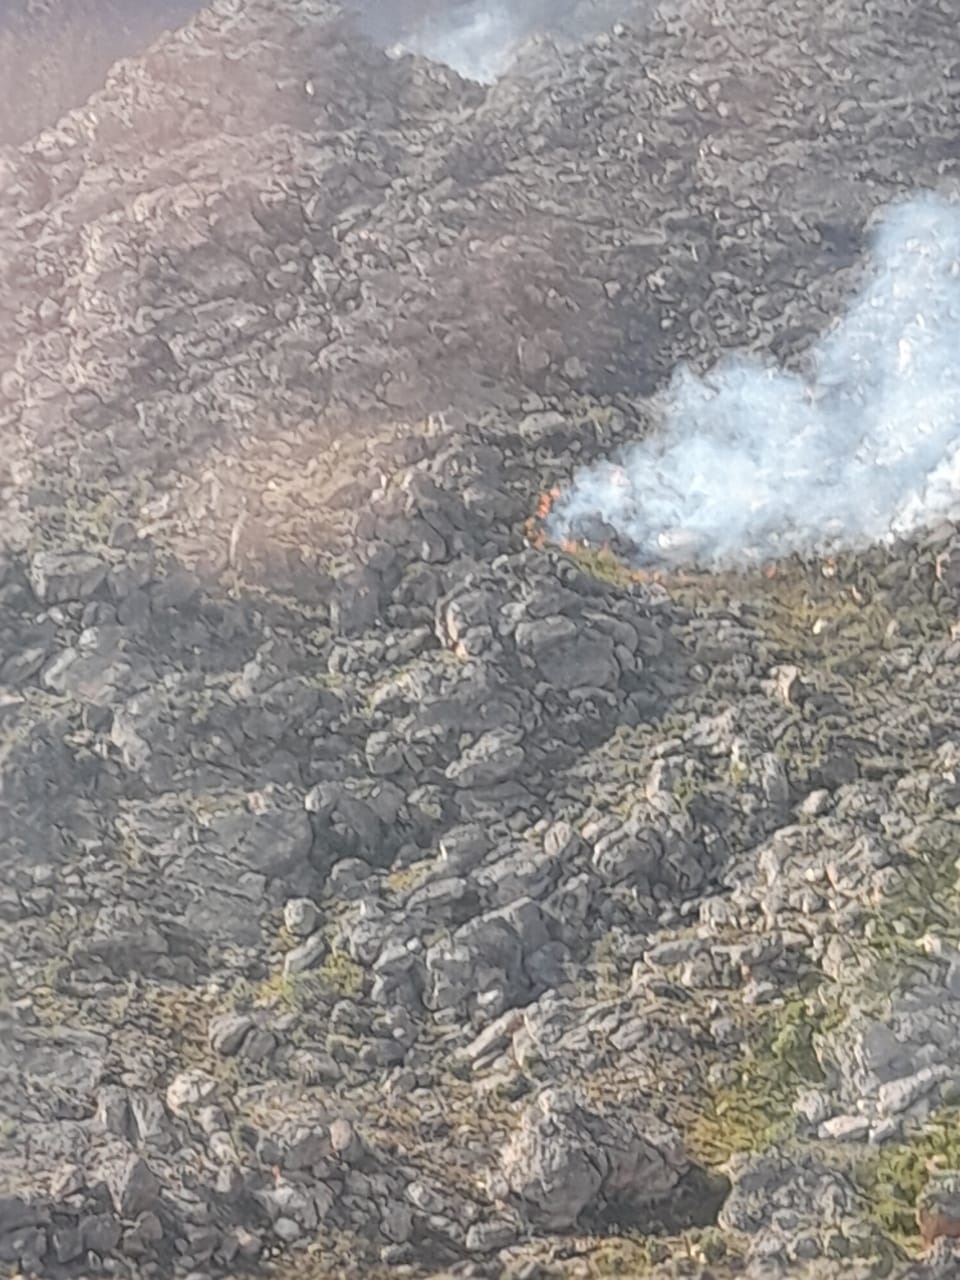 Fire in the Matroosberg mountain area in De Doorns